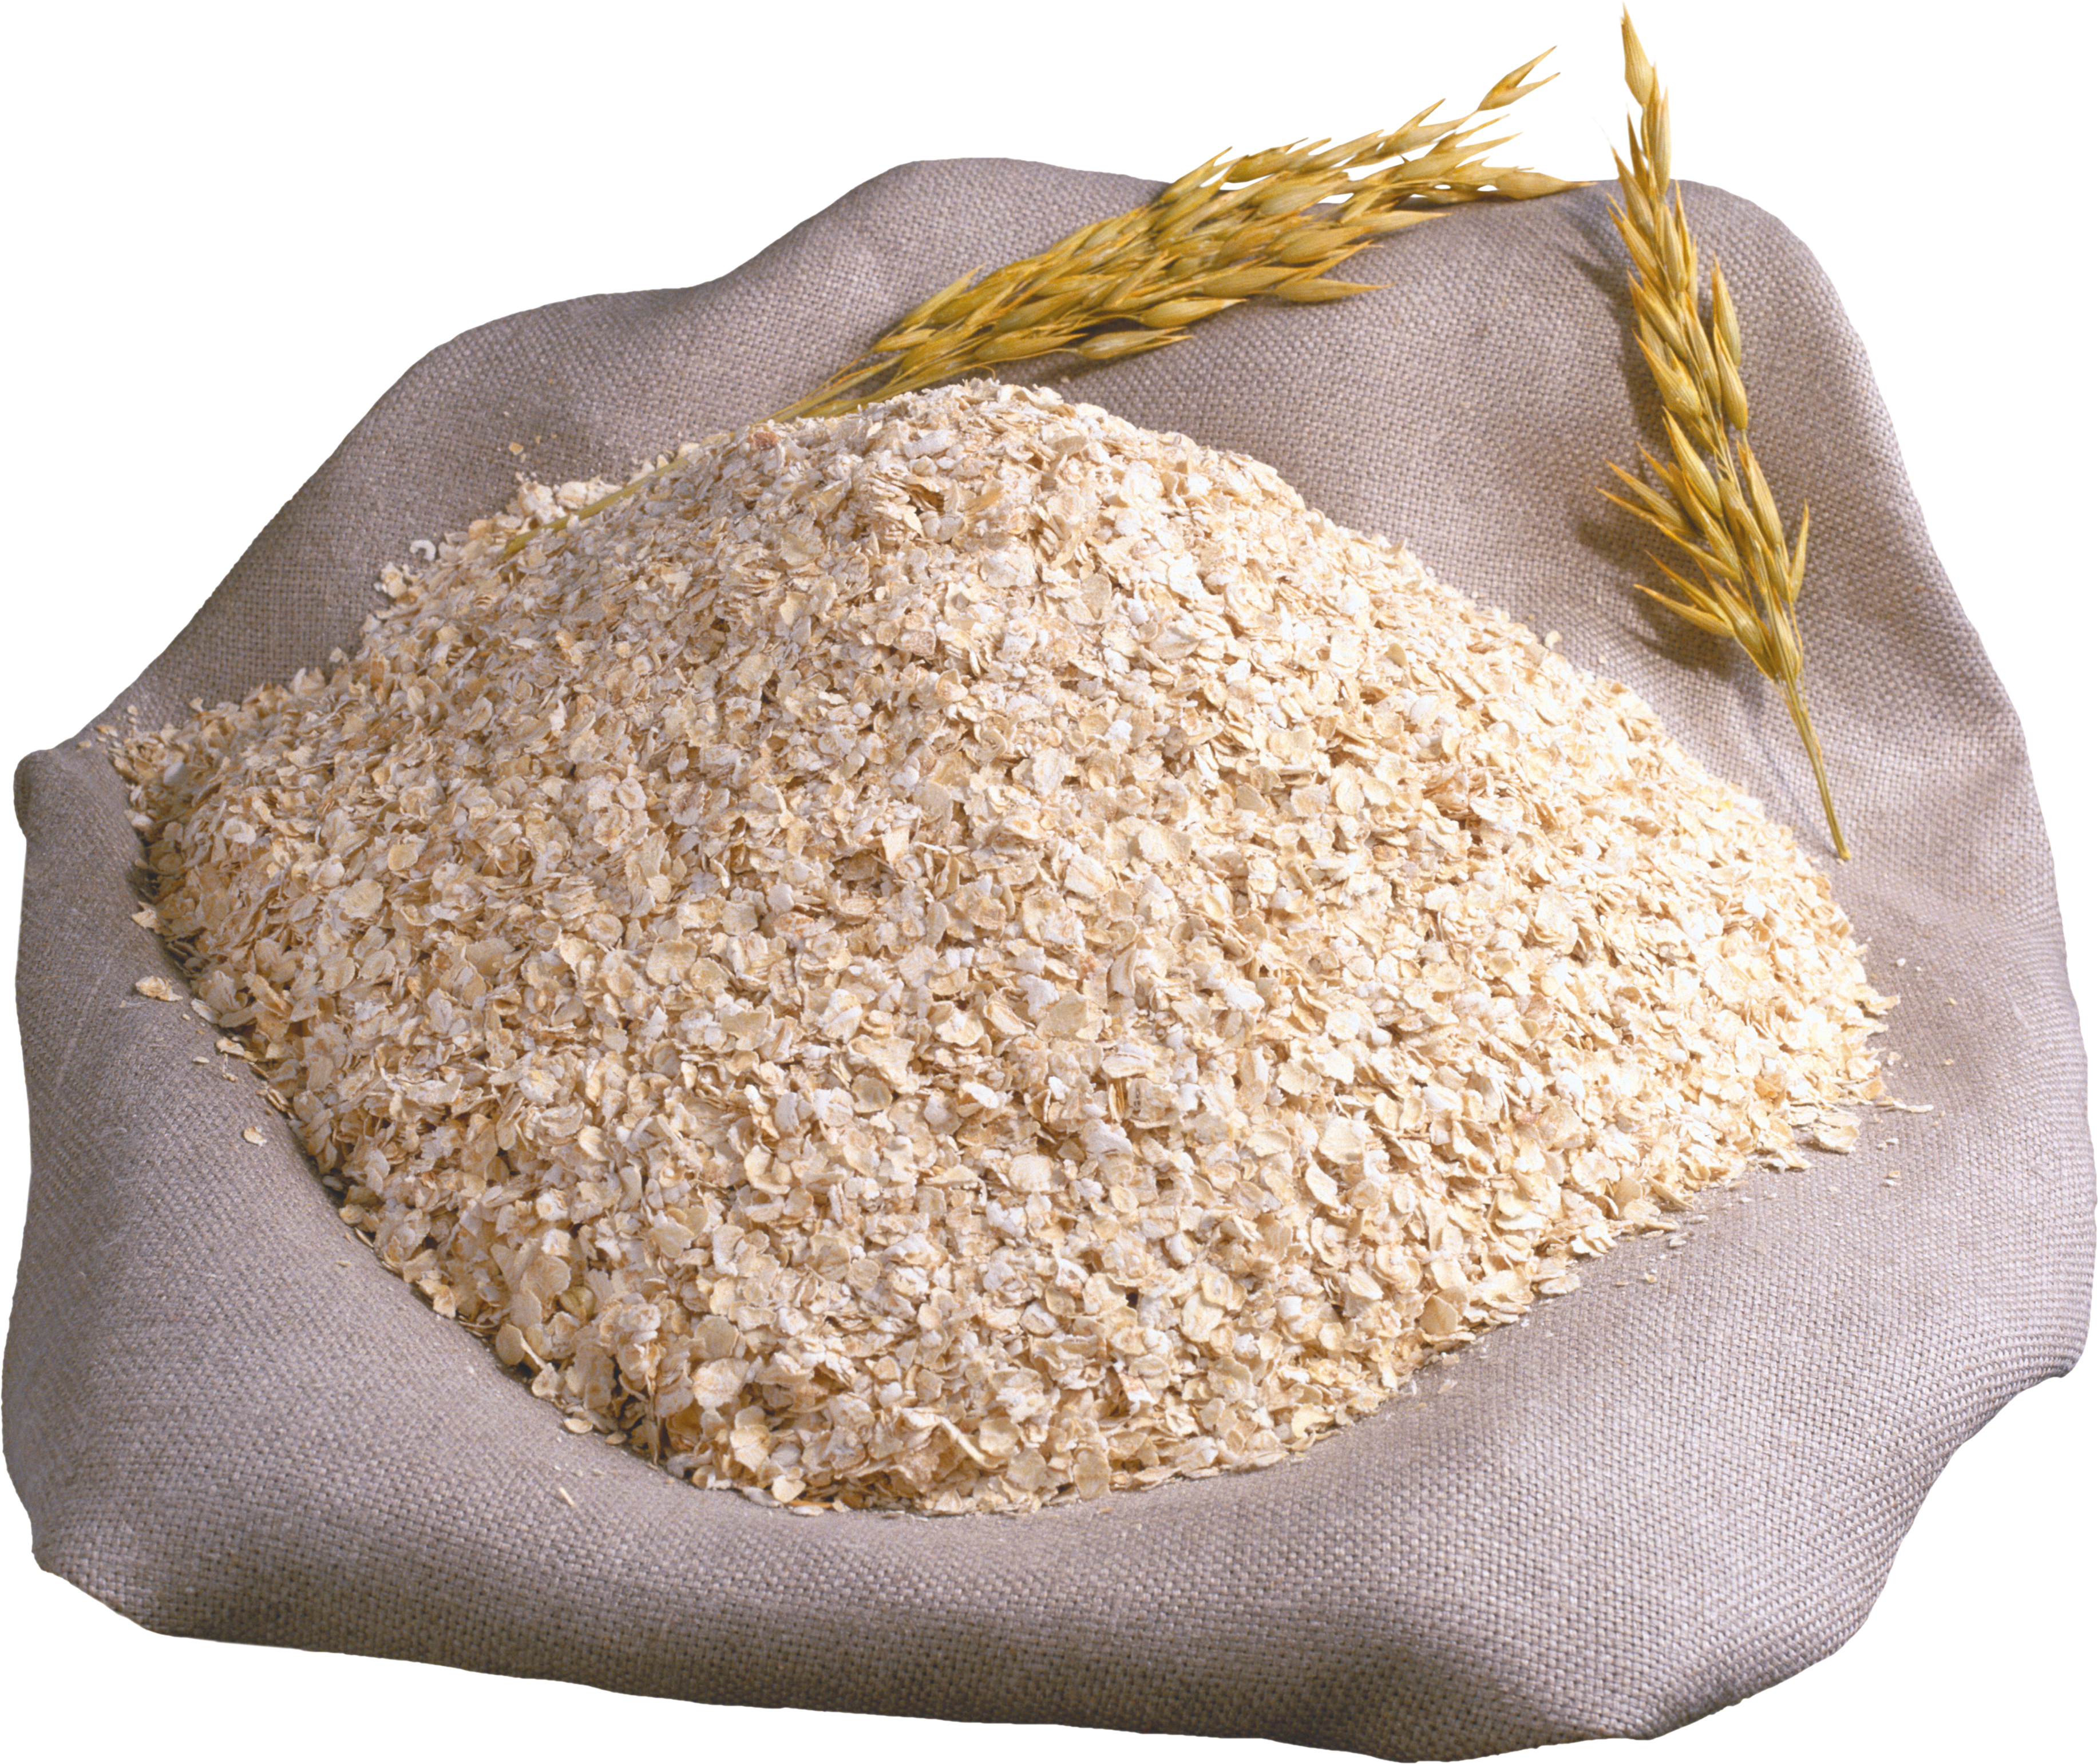 Пшеничная готовая. Отруби пшеничные, мешок (25 кг). Крупа пшеничная мешок 50кг АГРОСА. Отруби, крупа пшеничная. Мешки с крупой.